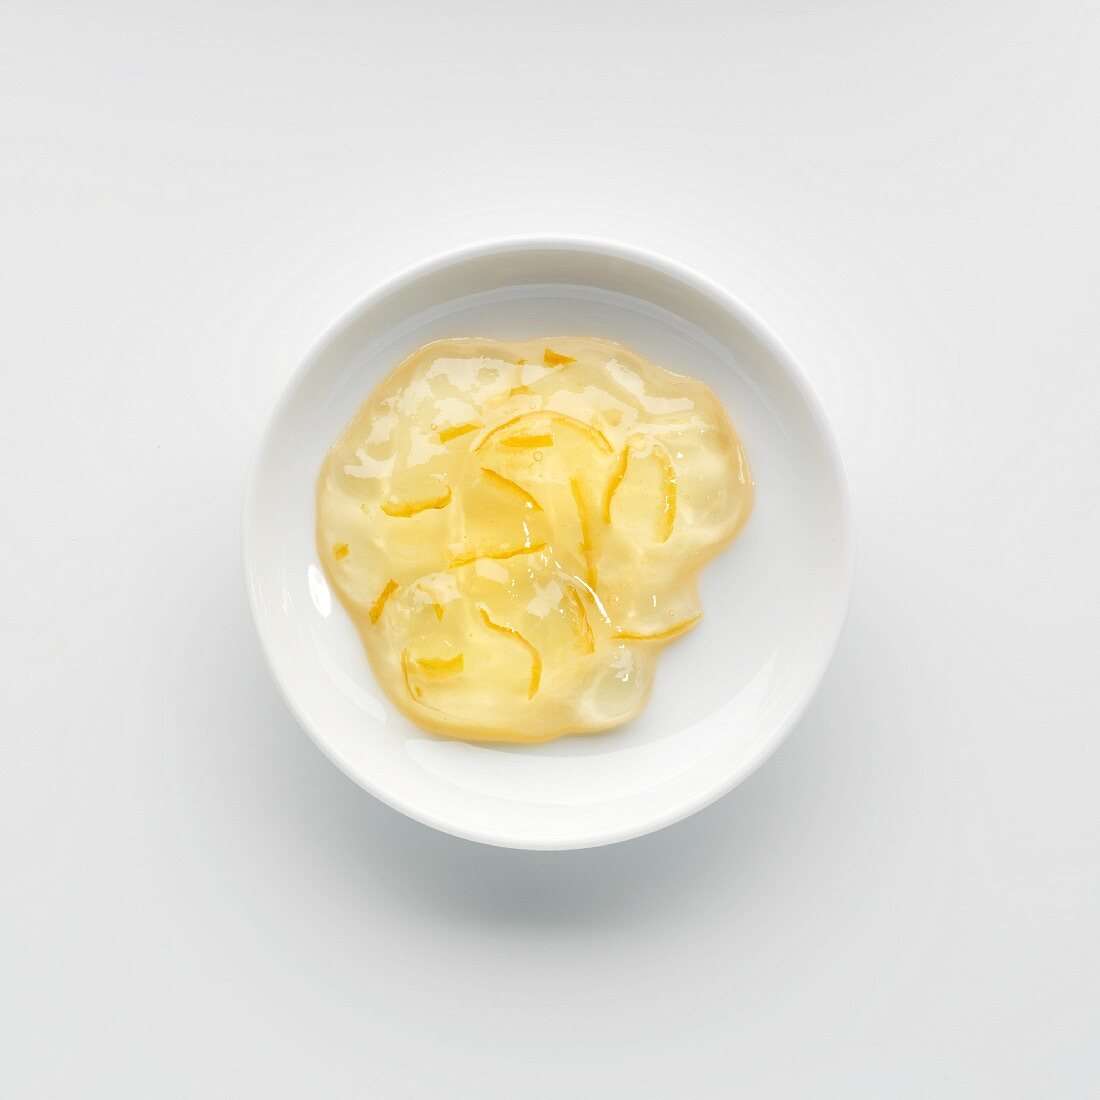 A portion of lemon marmalade on a plate